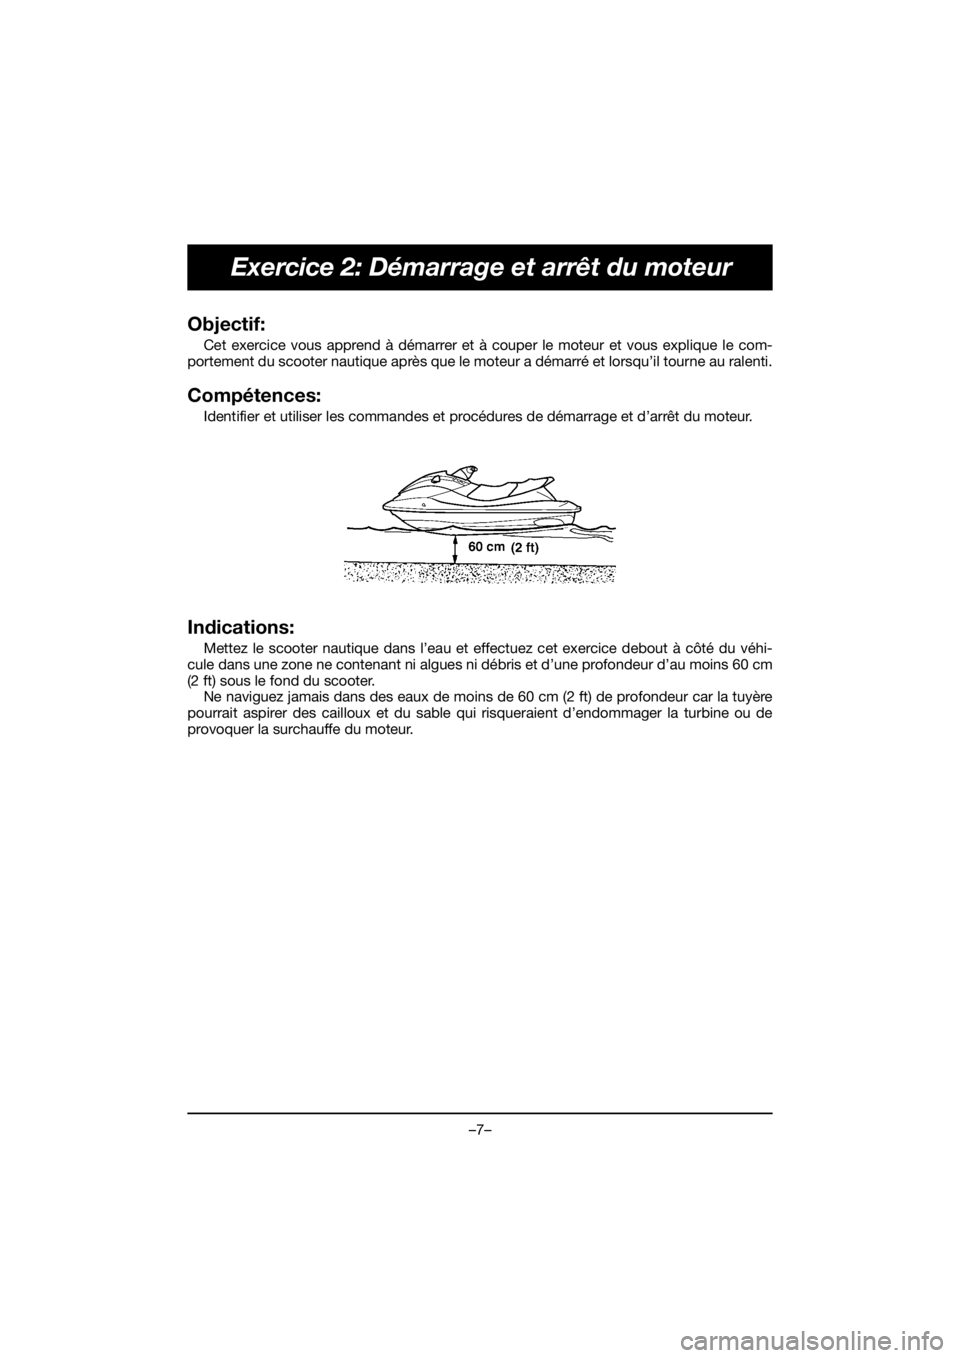 YAMAHA EX 2019  Manual de utilização (in Portuguese) –7–
Exercice 2: Démarrage et arrêt du moteur
Objectif: 
Cet exercice vous apprend à démarrer et à couper le moteur et vous explique le com-
portement du scooter nautique après que le moteur 